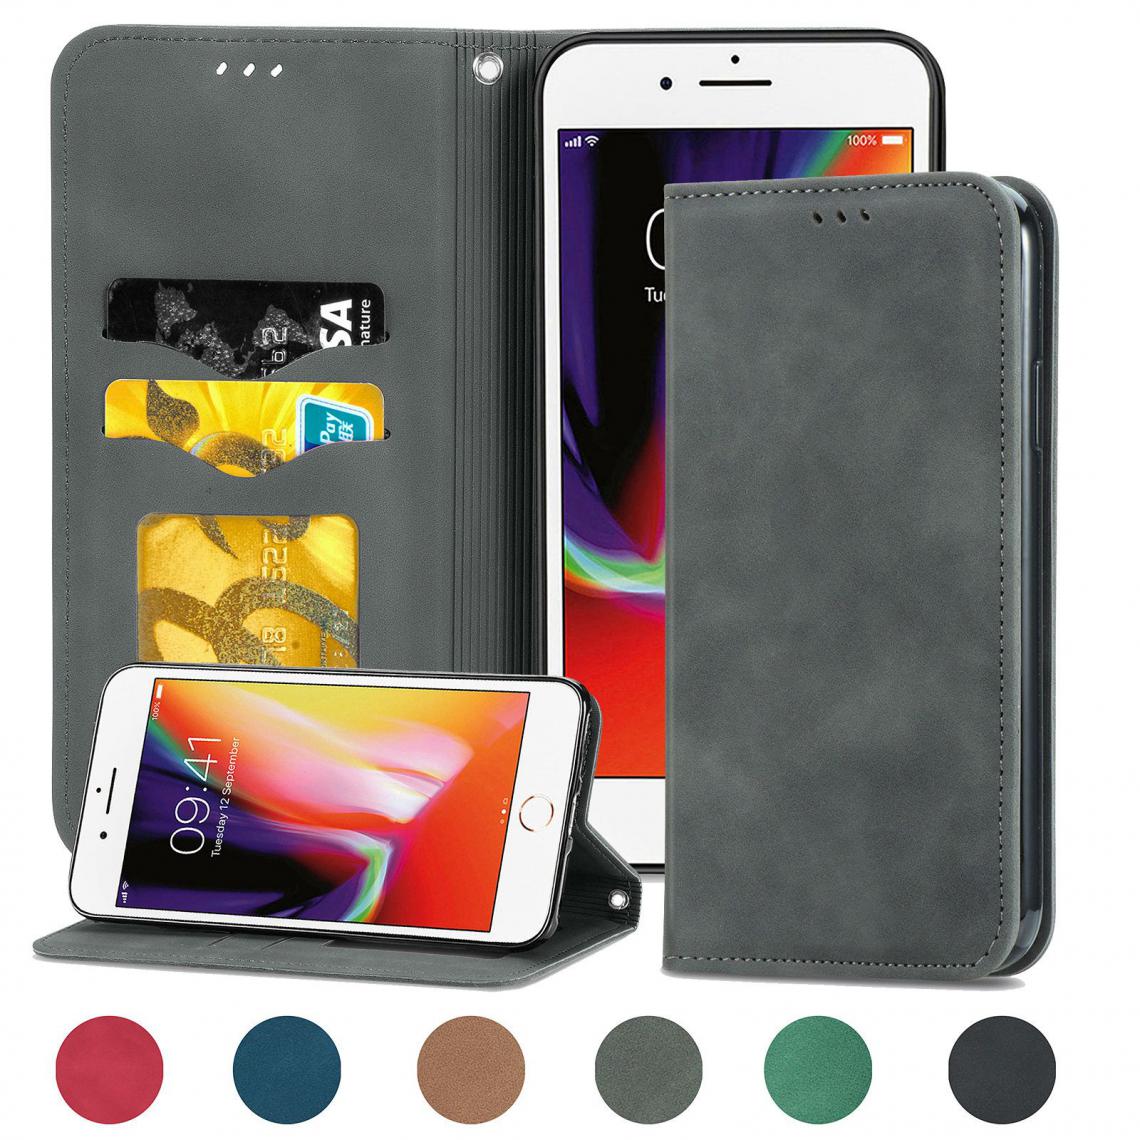 OtterBox - iPhone 6/6S Housse Etui Coque de protection type portefeuille (support carte de credit) [Gris] - Coque, étui smartphone